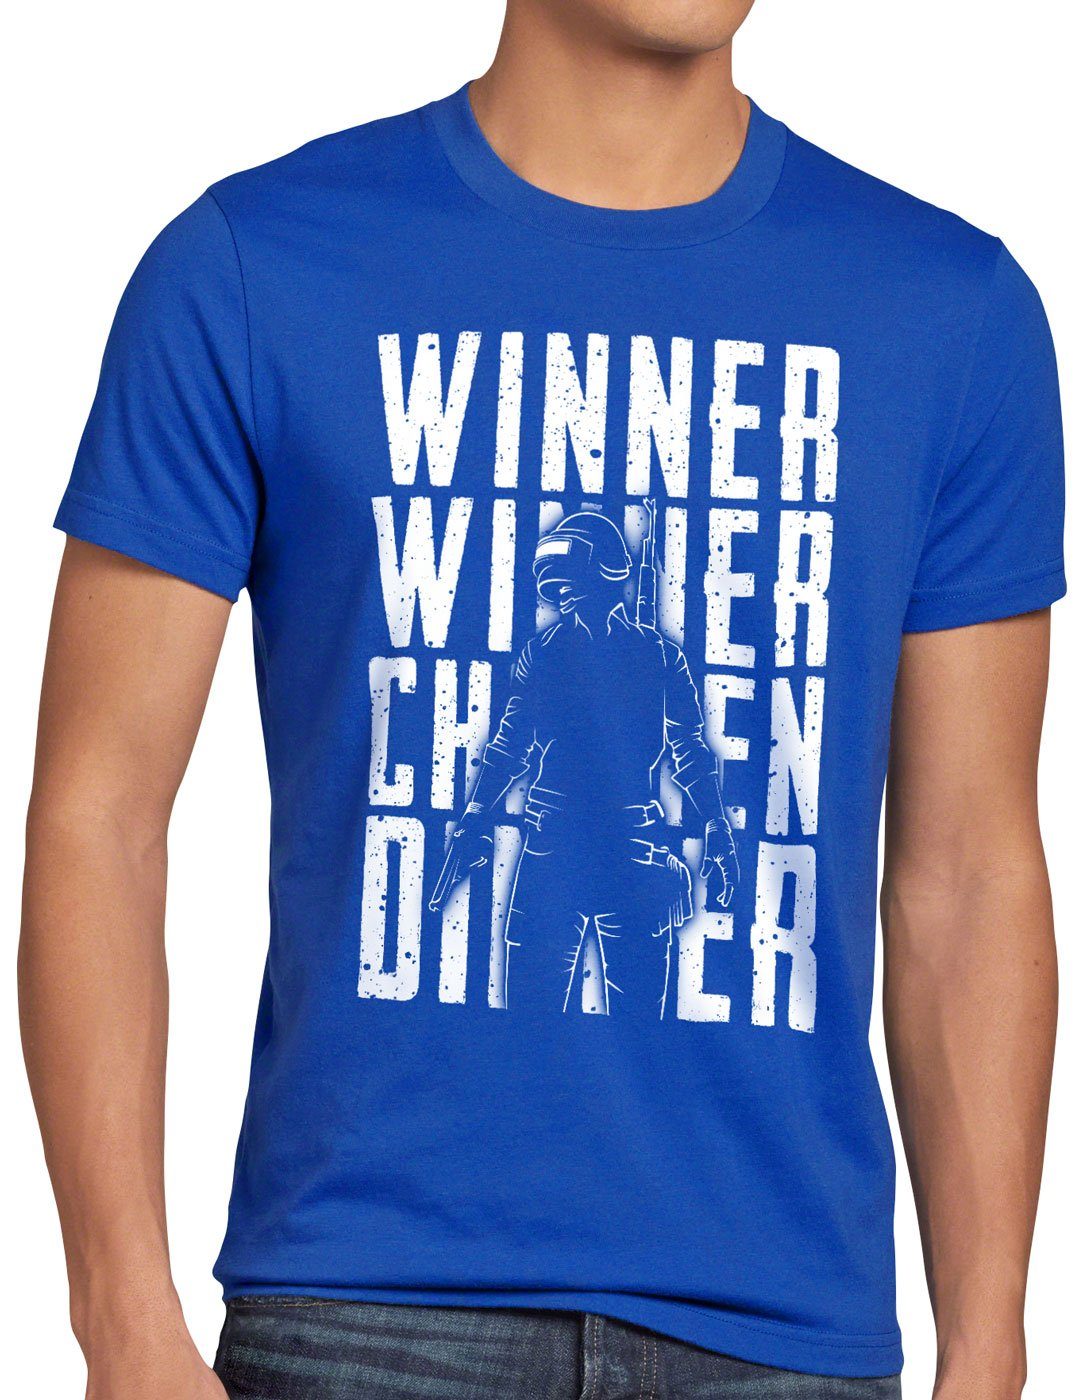 style3 Print-Shirt Herren T-Shirt Winner Winner Chicken Dinner pvp multiplayer blau